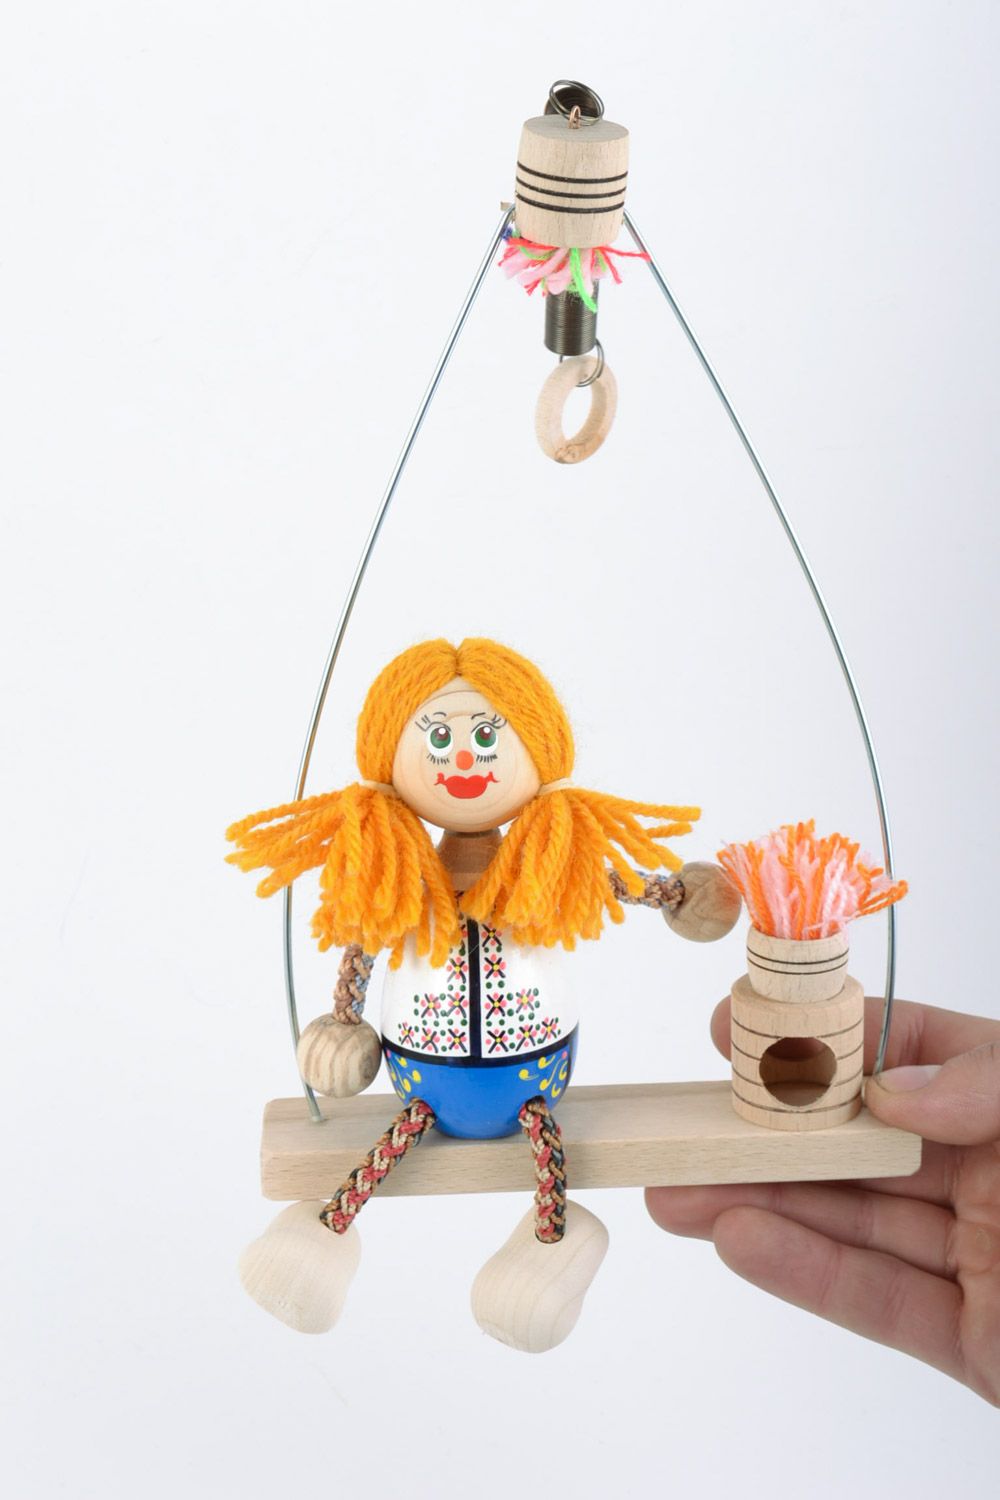 Оригинальная деревянная игрушка Девочка на лавочке ручной работы расписная фото 1